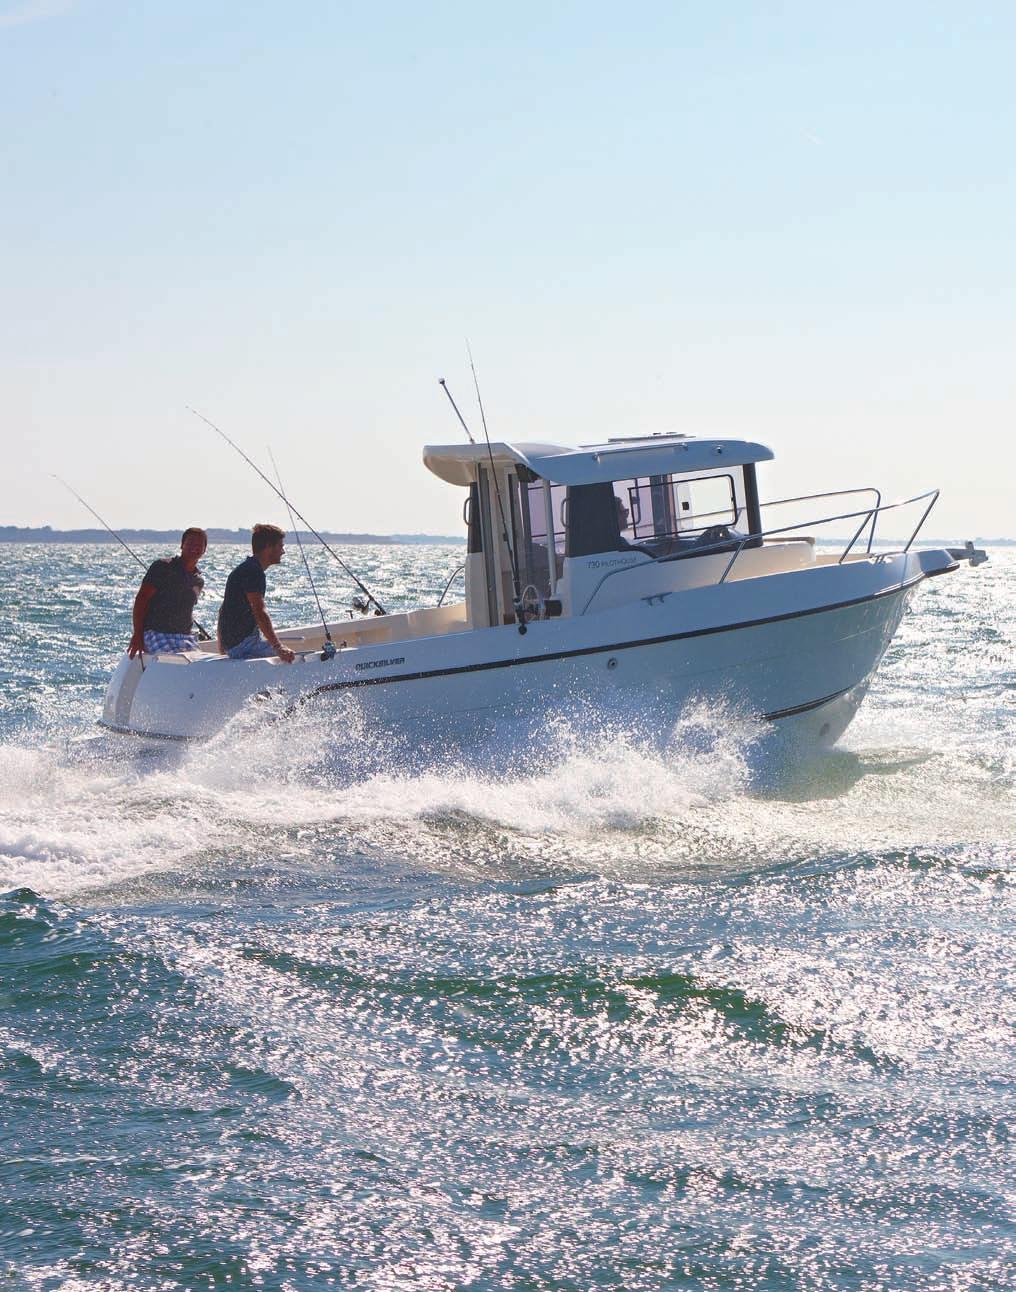 VELKOMMEN TIL CAPTUR-SERIEN FRA QUICKSILVER Captur gir deg frihet på sjøen, frihet til å fiske og frihet til å være spontan. Perfekt for familie, venner og fiskeentusiaster.